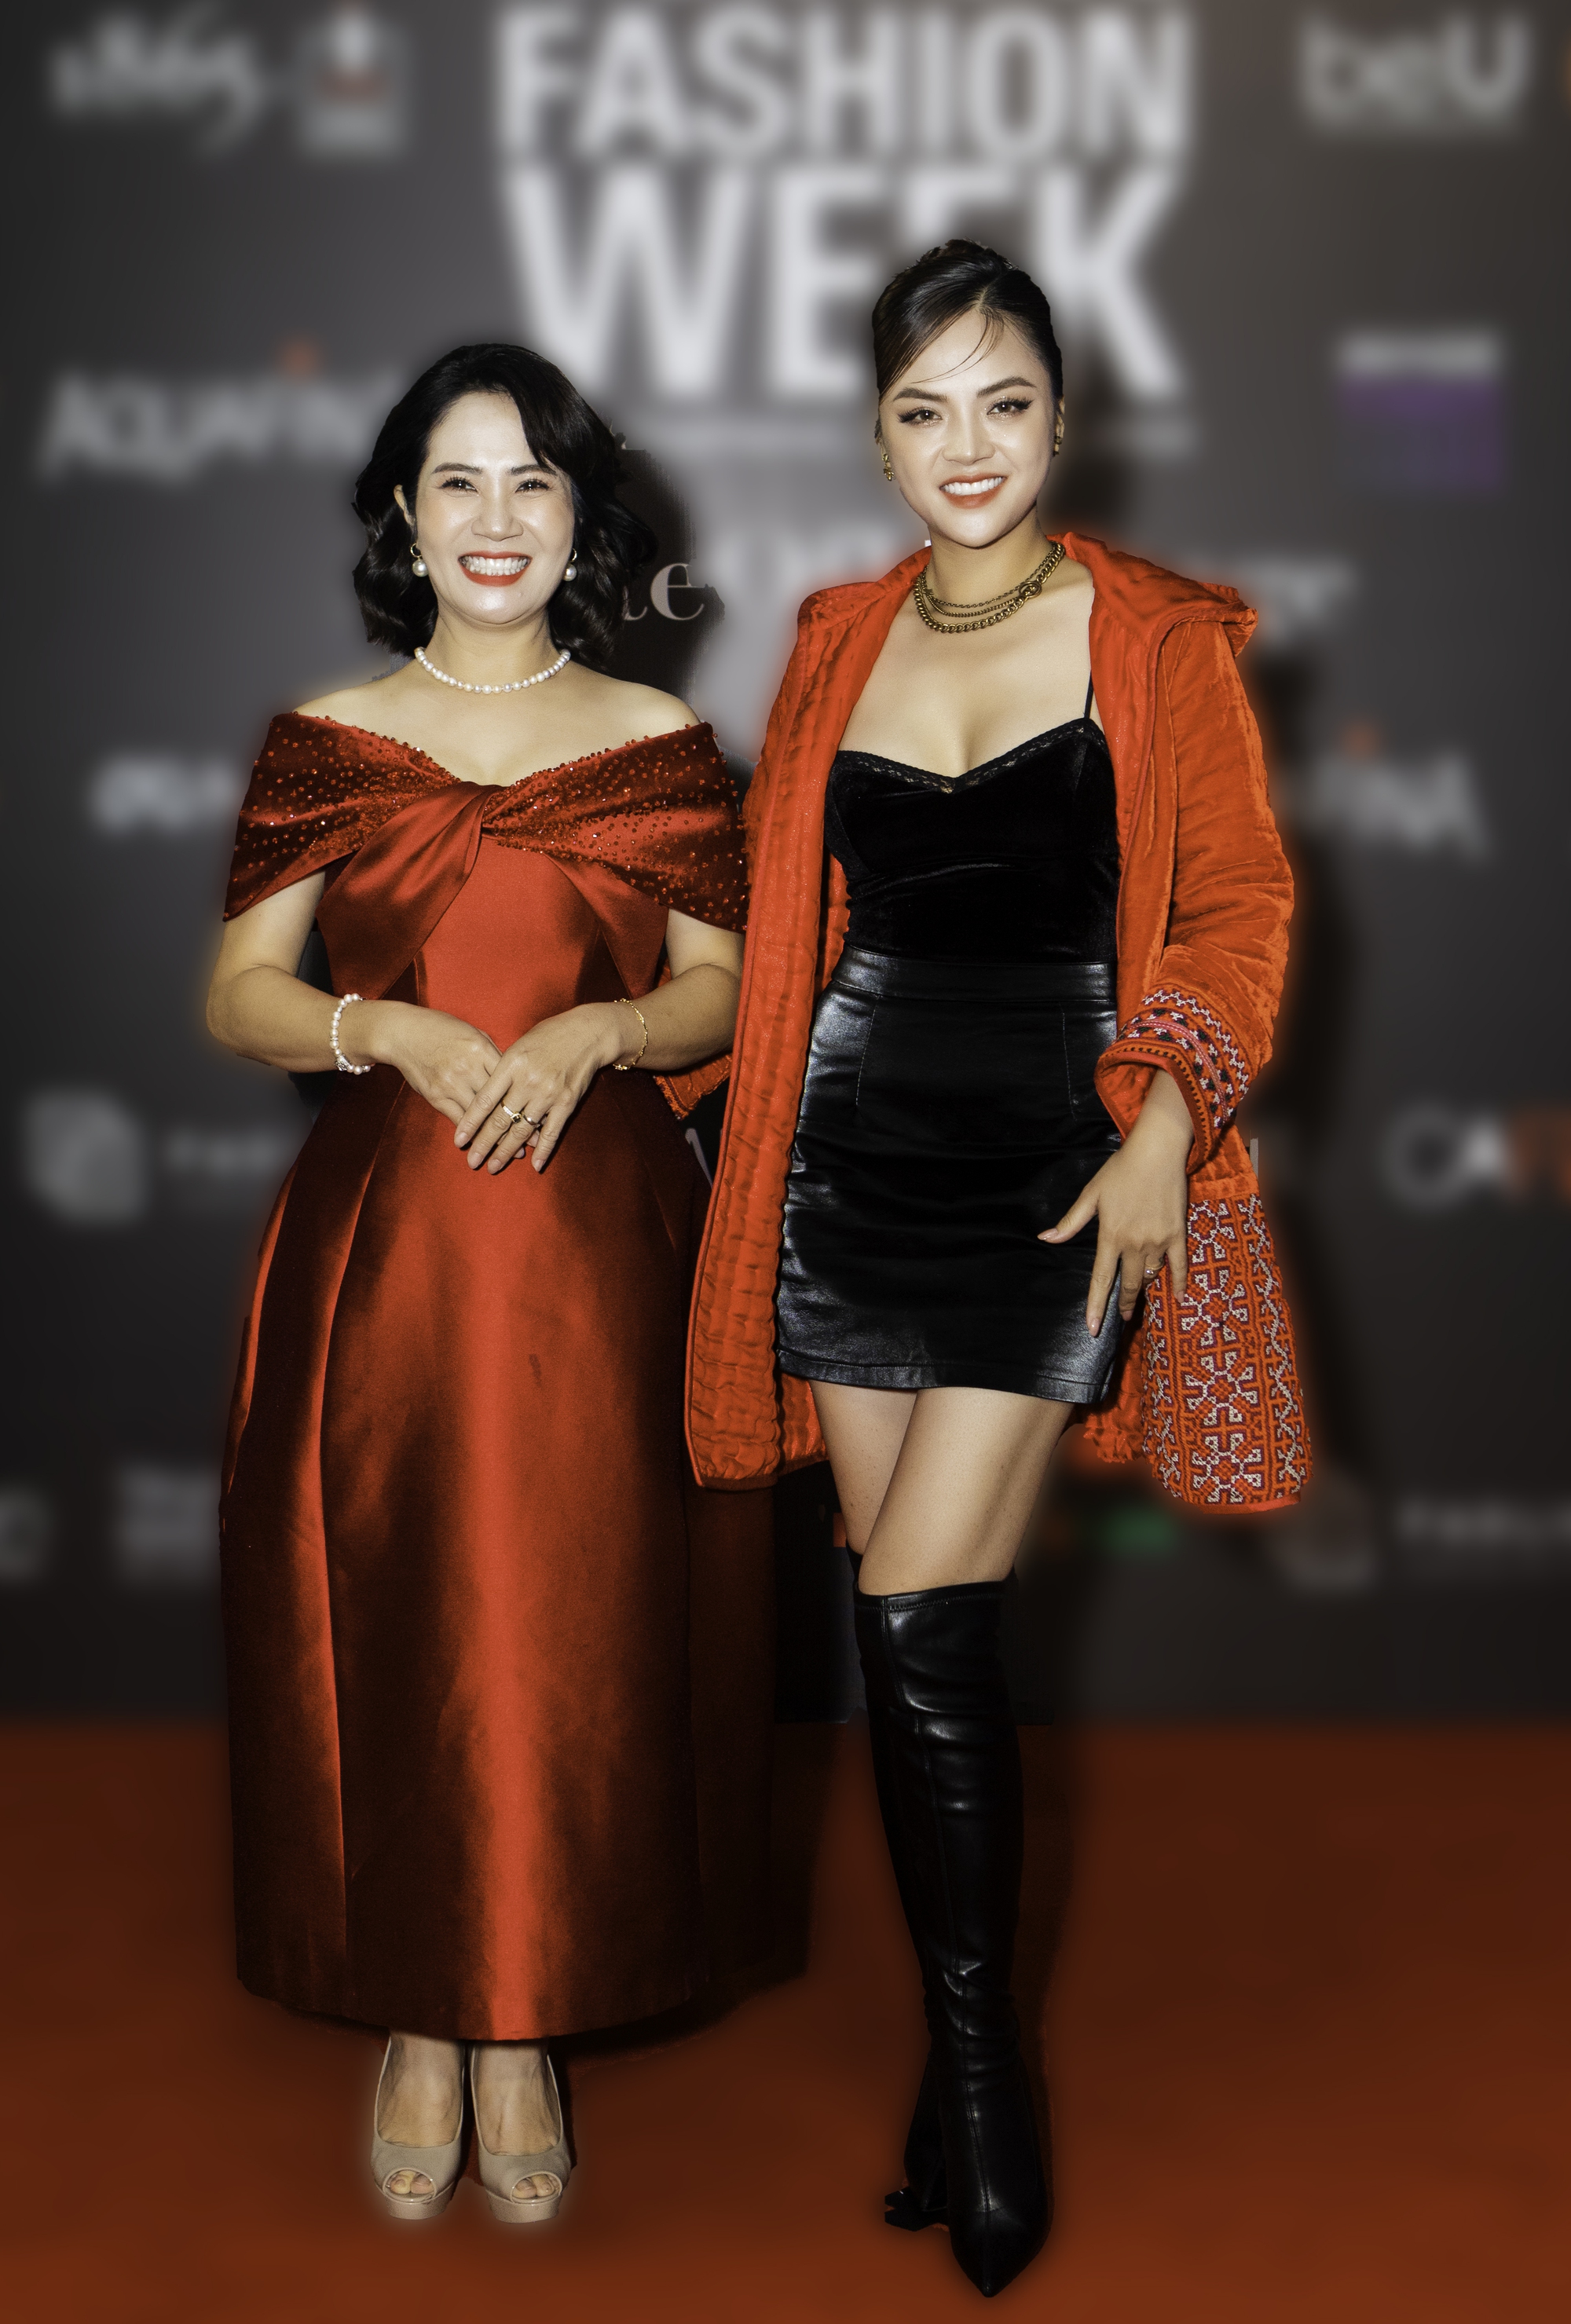 Vợ chồng Bình An - Phương nga hội ngộ cùng dàn diễn viên VTV trên thảm đỏ mở màn Tuần lễ thời trang - Ảnh 8.